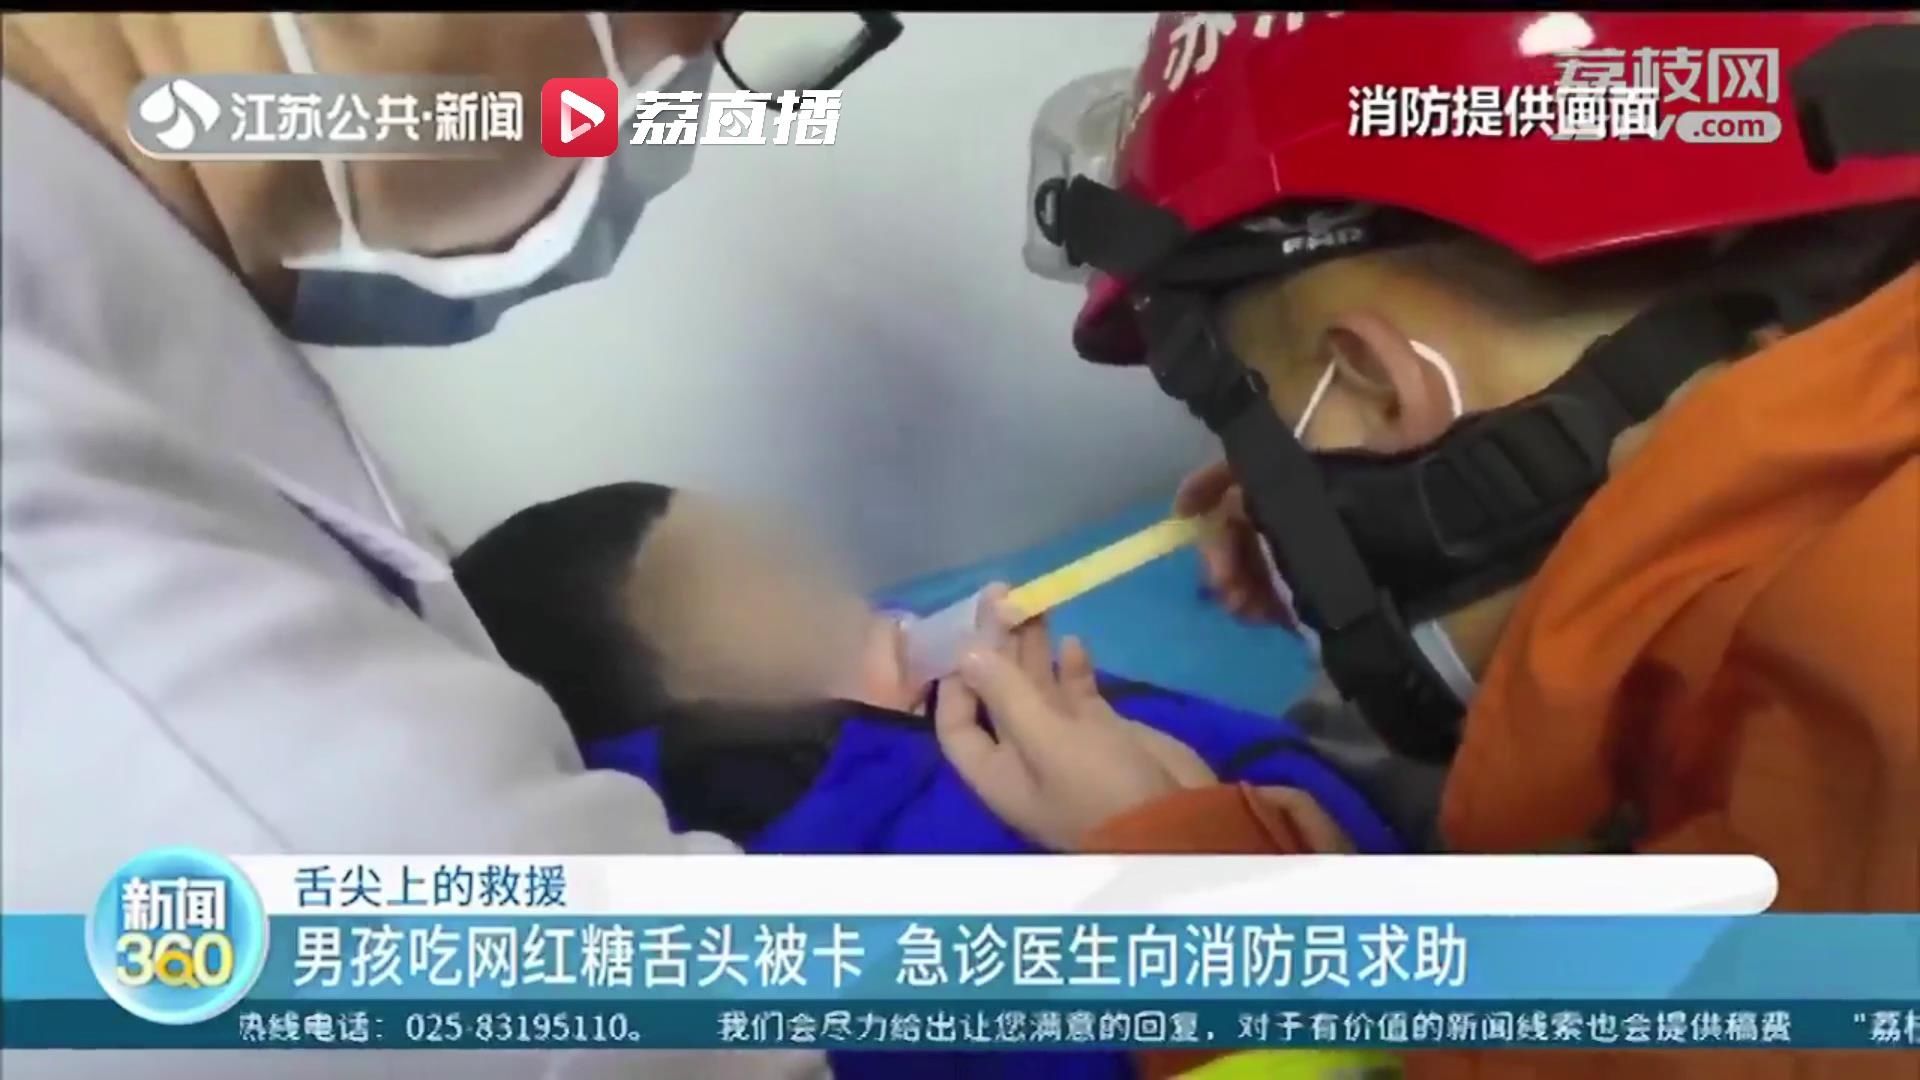 消防员|连云港一4岁小男孩吃网红糖果时舌头被卡 急诊医生向消防员求助